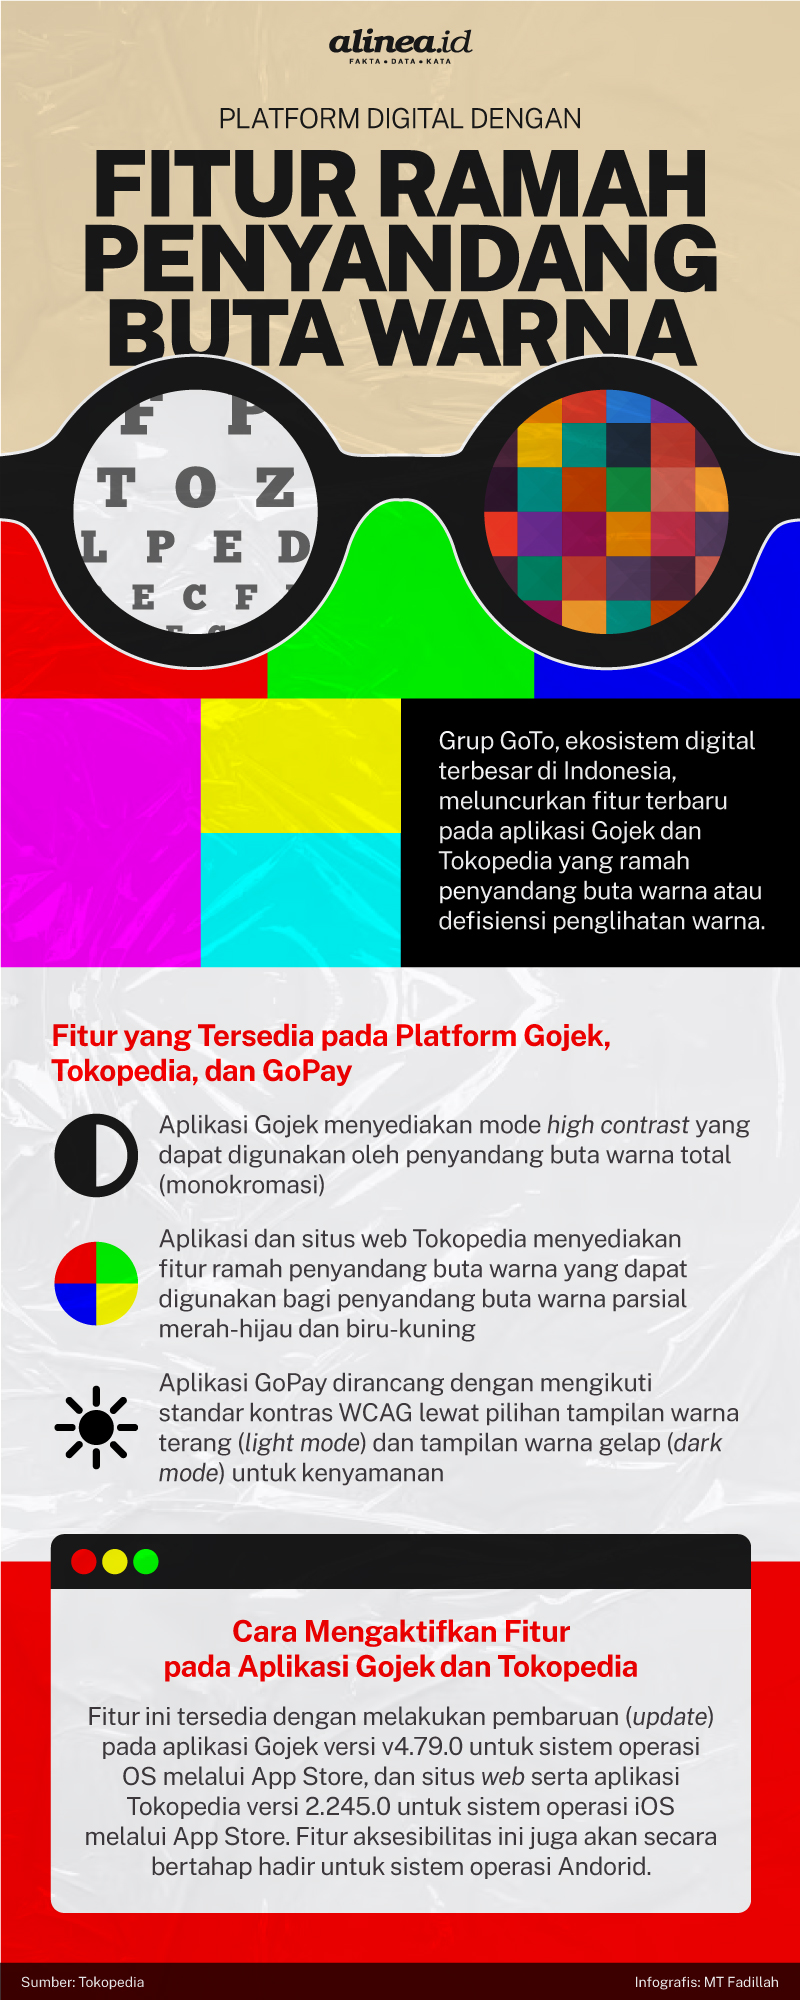 Infografik platform digital dengan fitur ramah penyandang buta warna. Alinea.id/MT Fadillah.